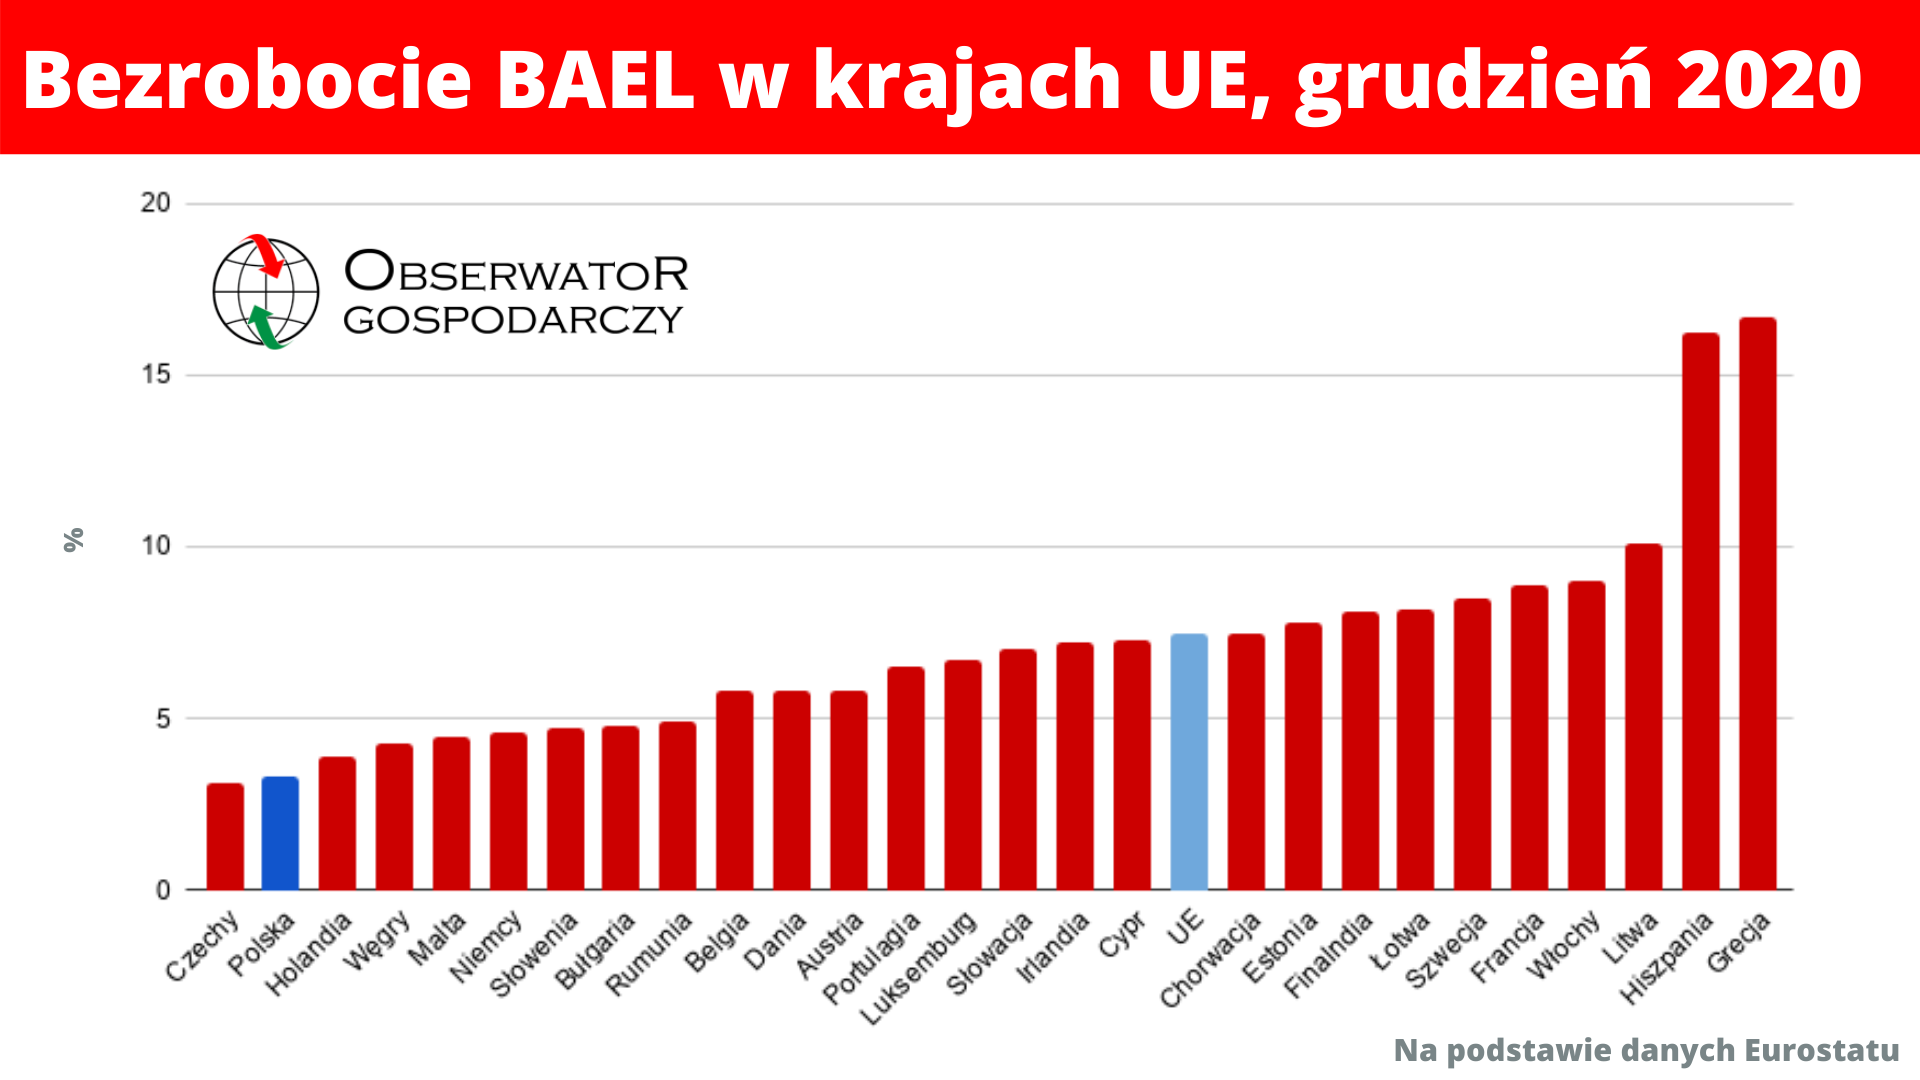 Polski sukces gospodarczy, czyli niskie bezrobocie